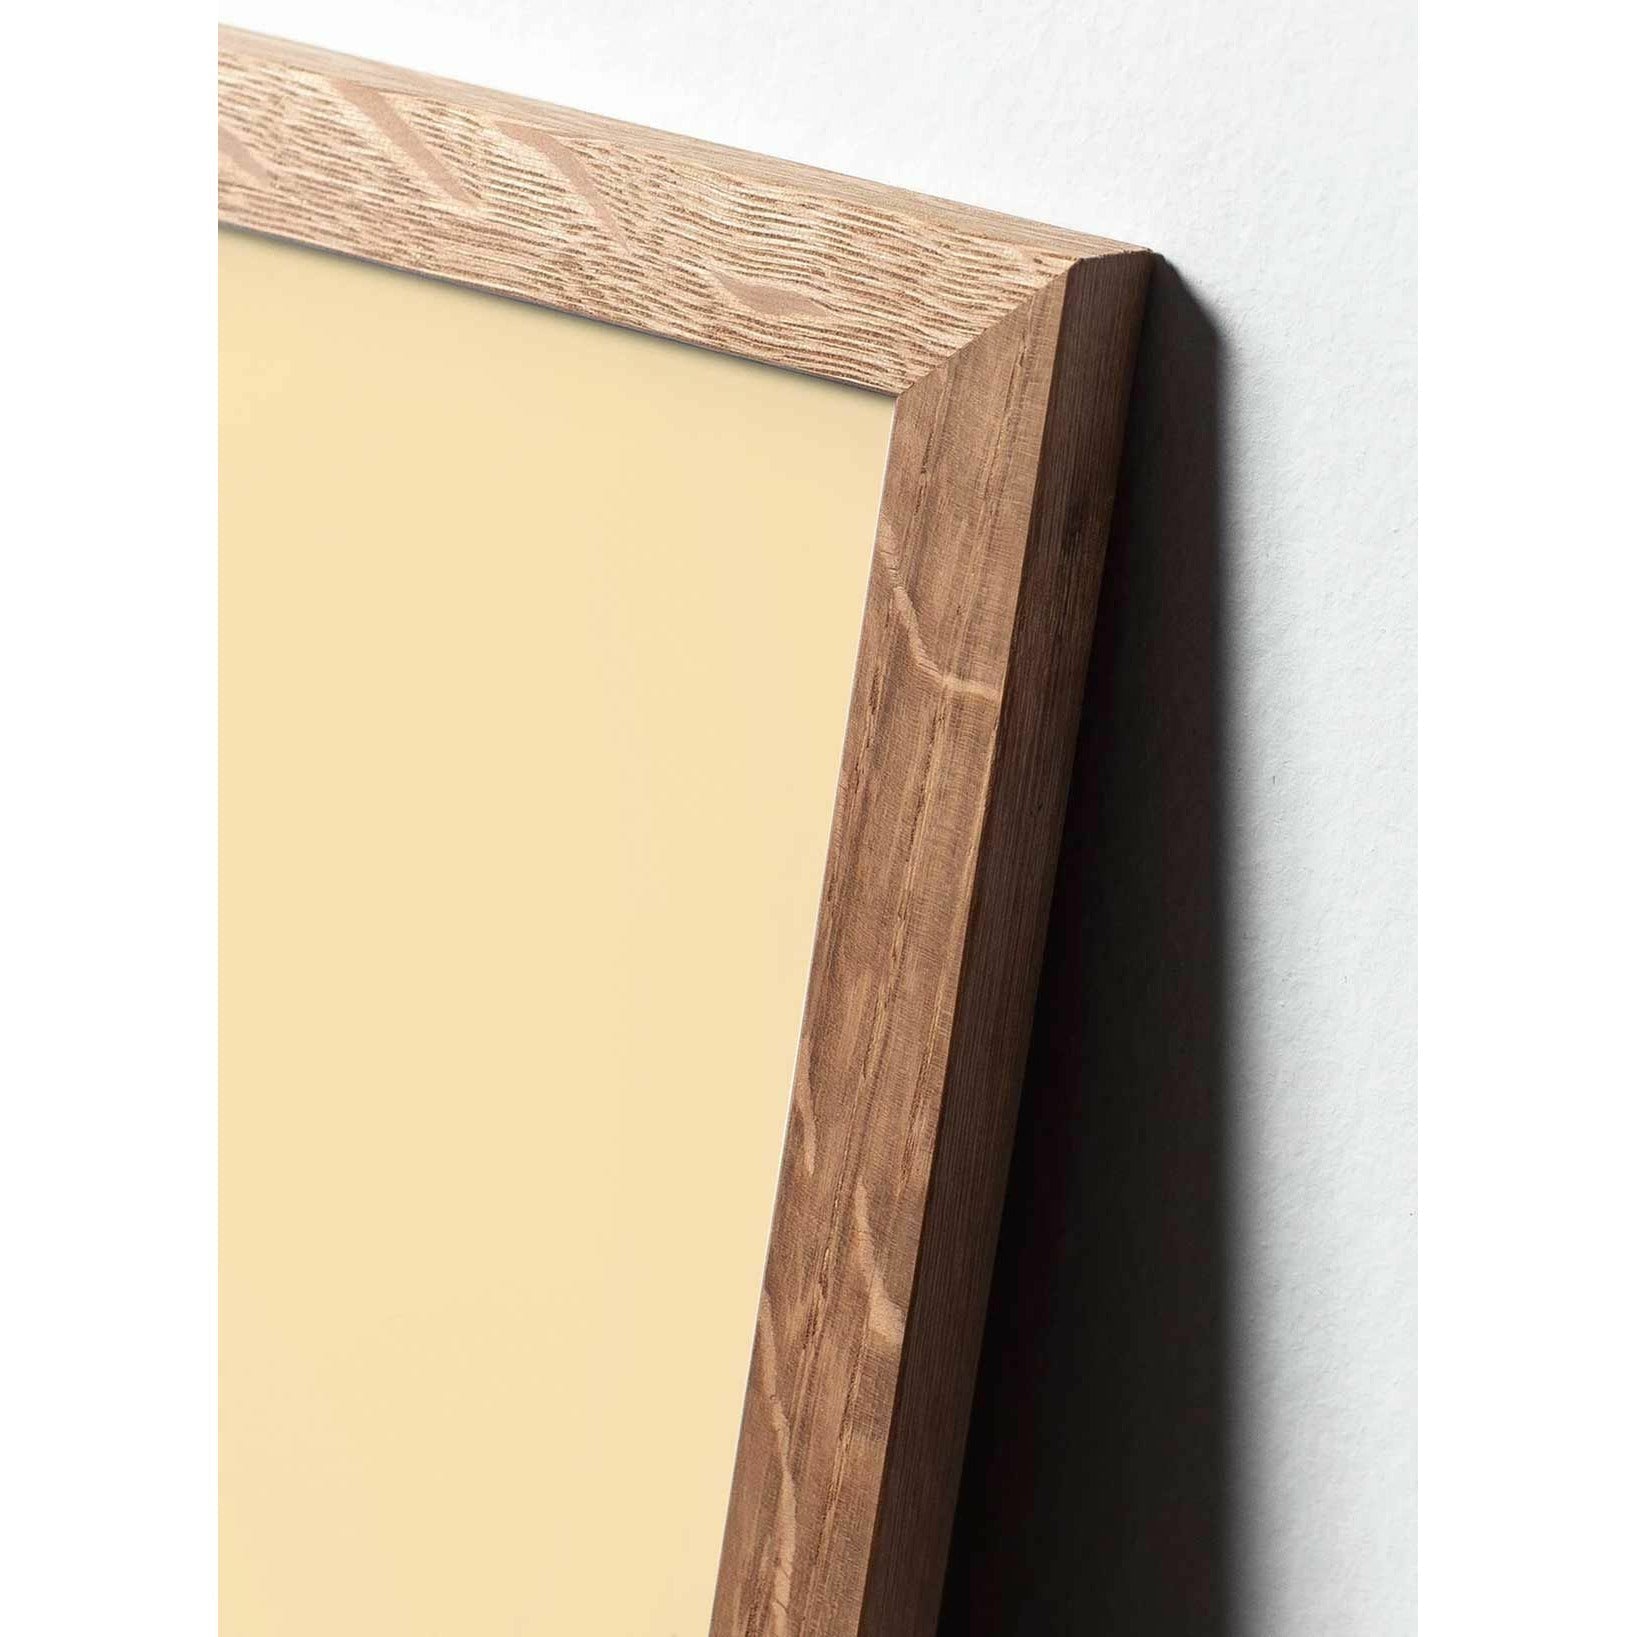 brainchild Snowdrop Classic juliste, kehys, joka on valmistettu kevyestä puusta 70x100 cm, violetti tausta